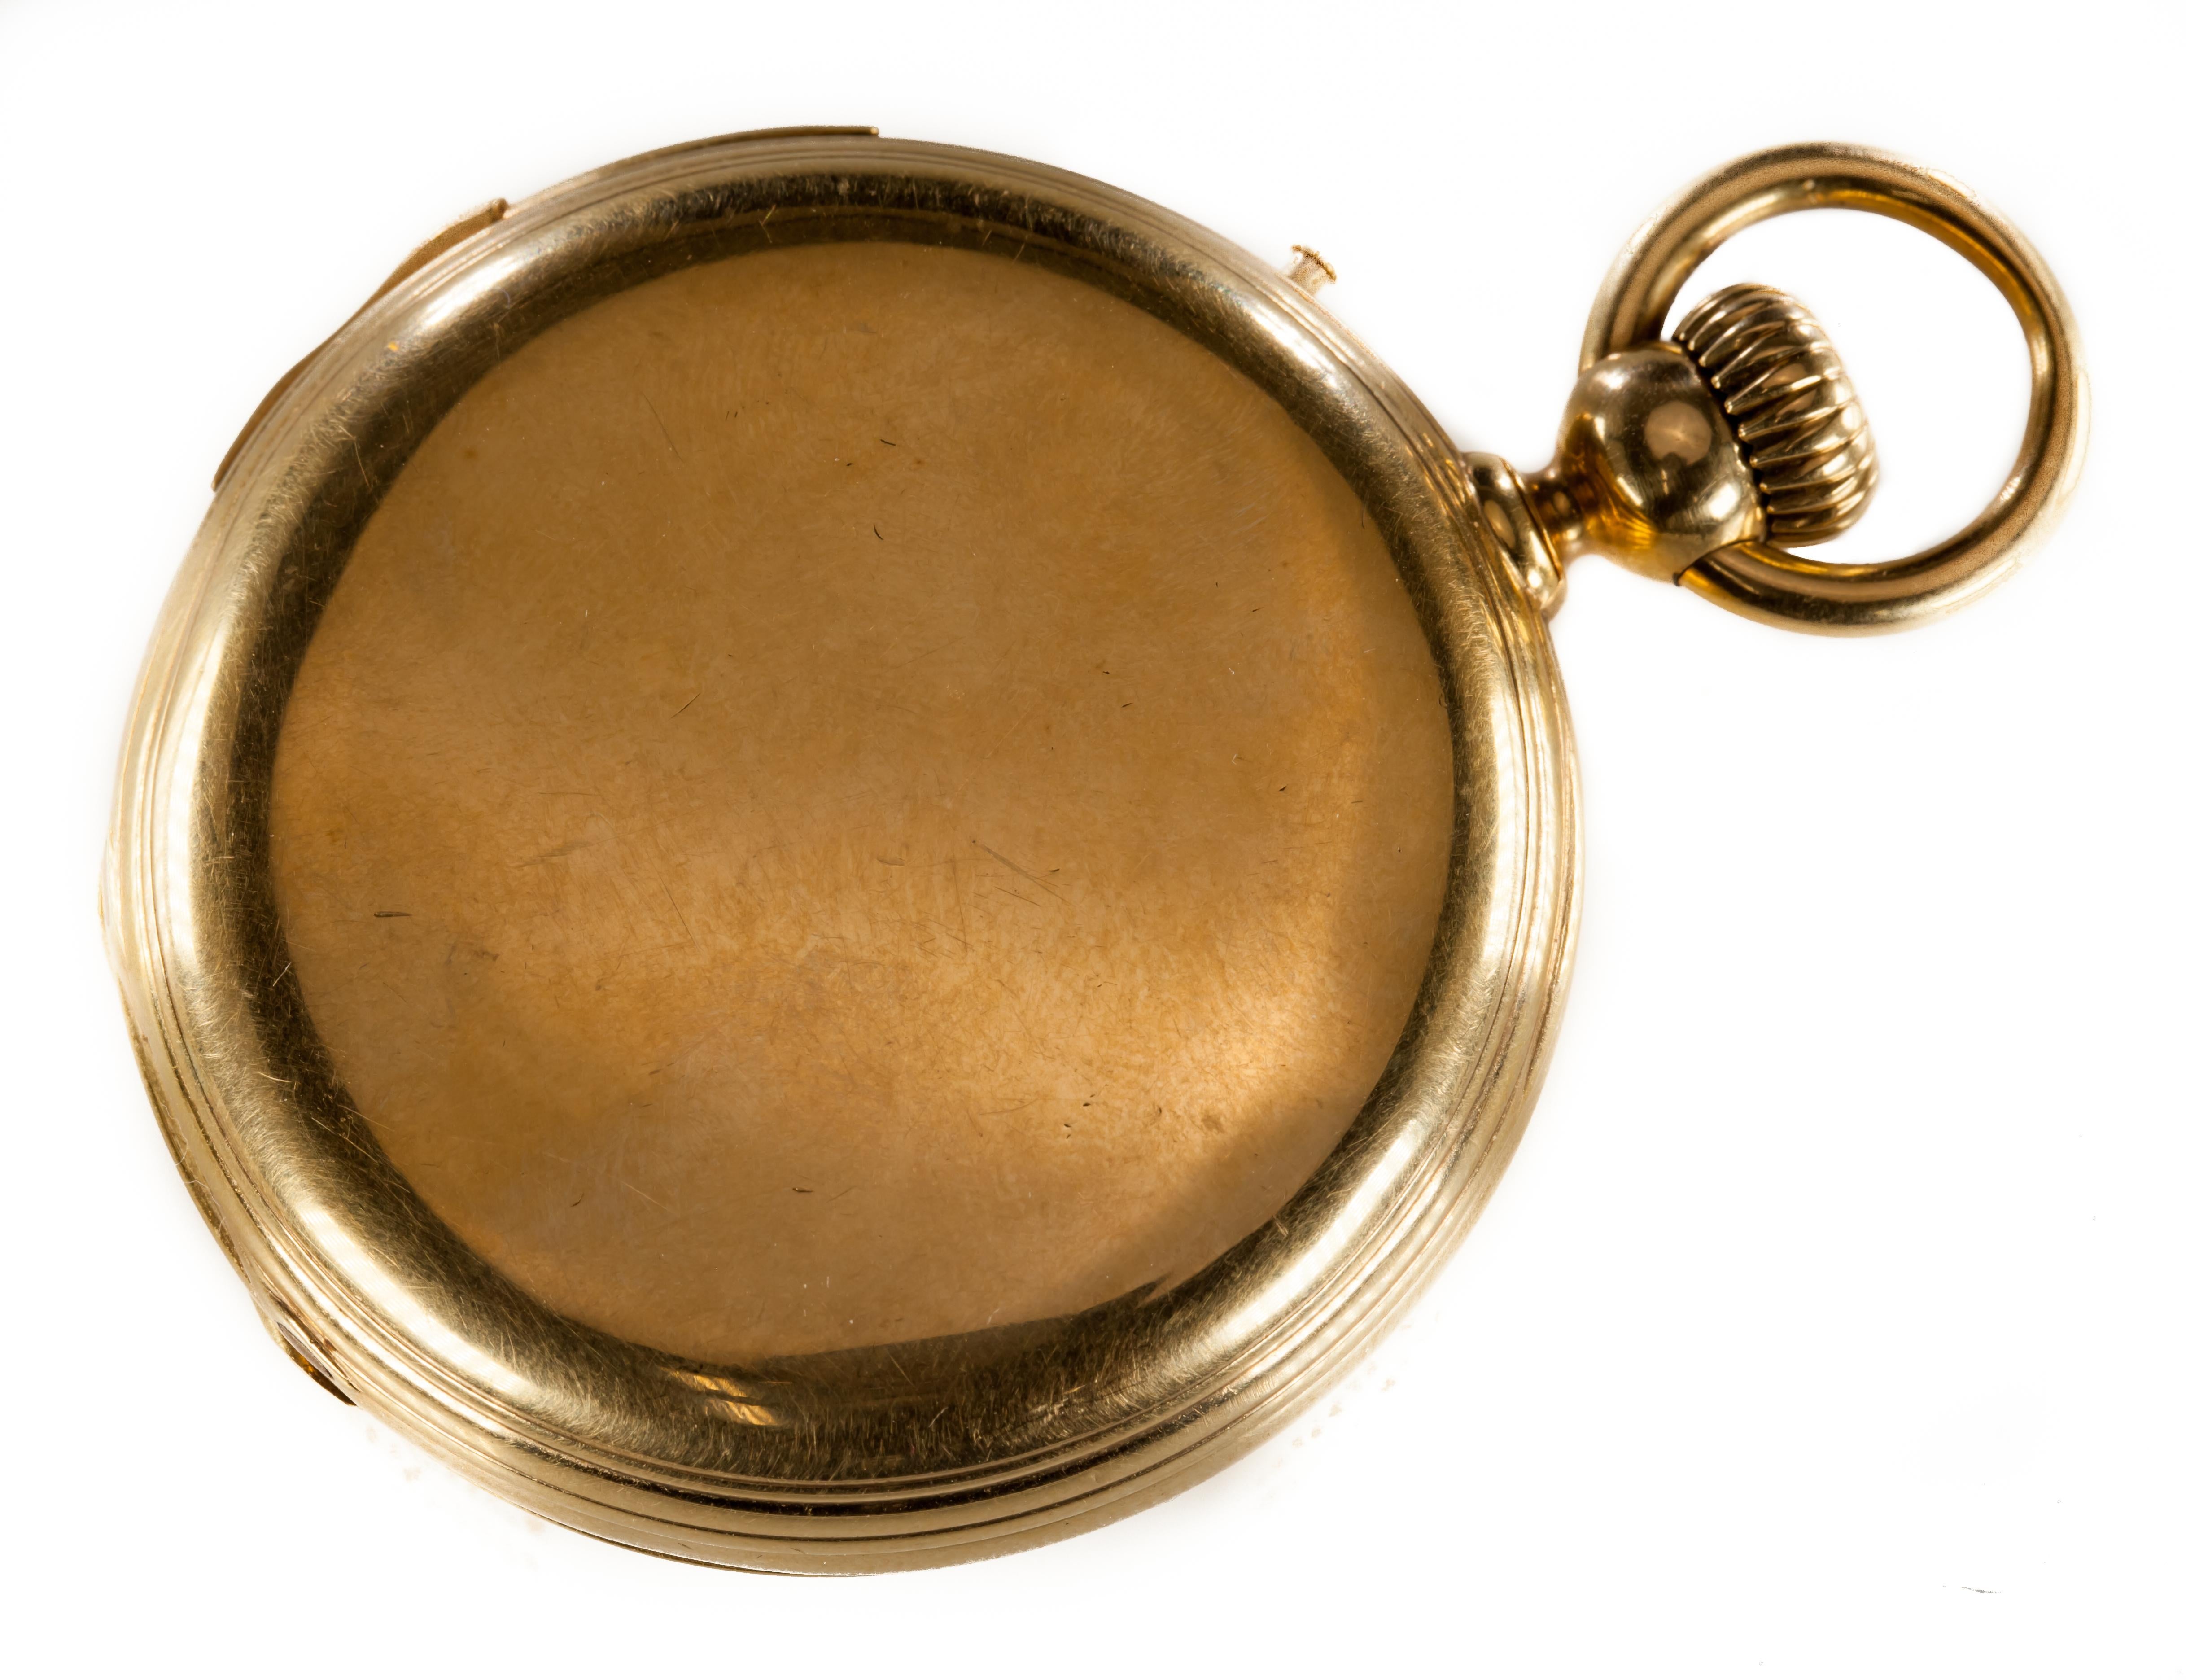 Wunderschöne Vintage Double Hunter Taschenuhr von C.H. Meylan & Fleischmann
Ausstattung Minutenrepetition, 35 Rubis 
Dedic Zweitwahl
18k Gelbgold Gehäuse mit Innenglas für Uhrwerk
Uhrwerk ist 49,5 mm im Durchmesser 
Gesamtmasse = 112.7